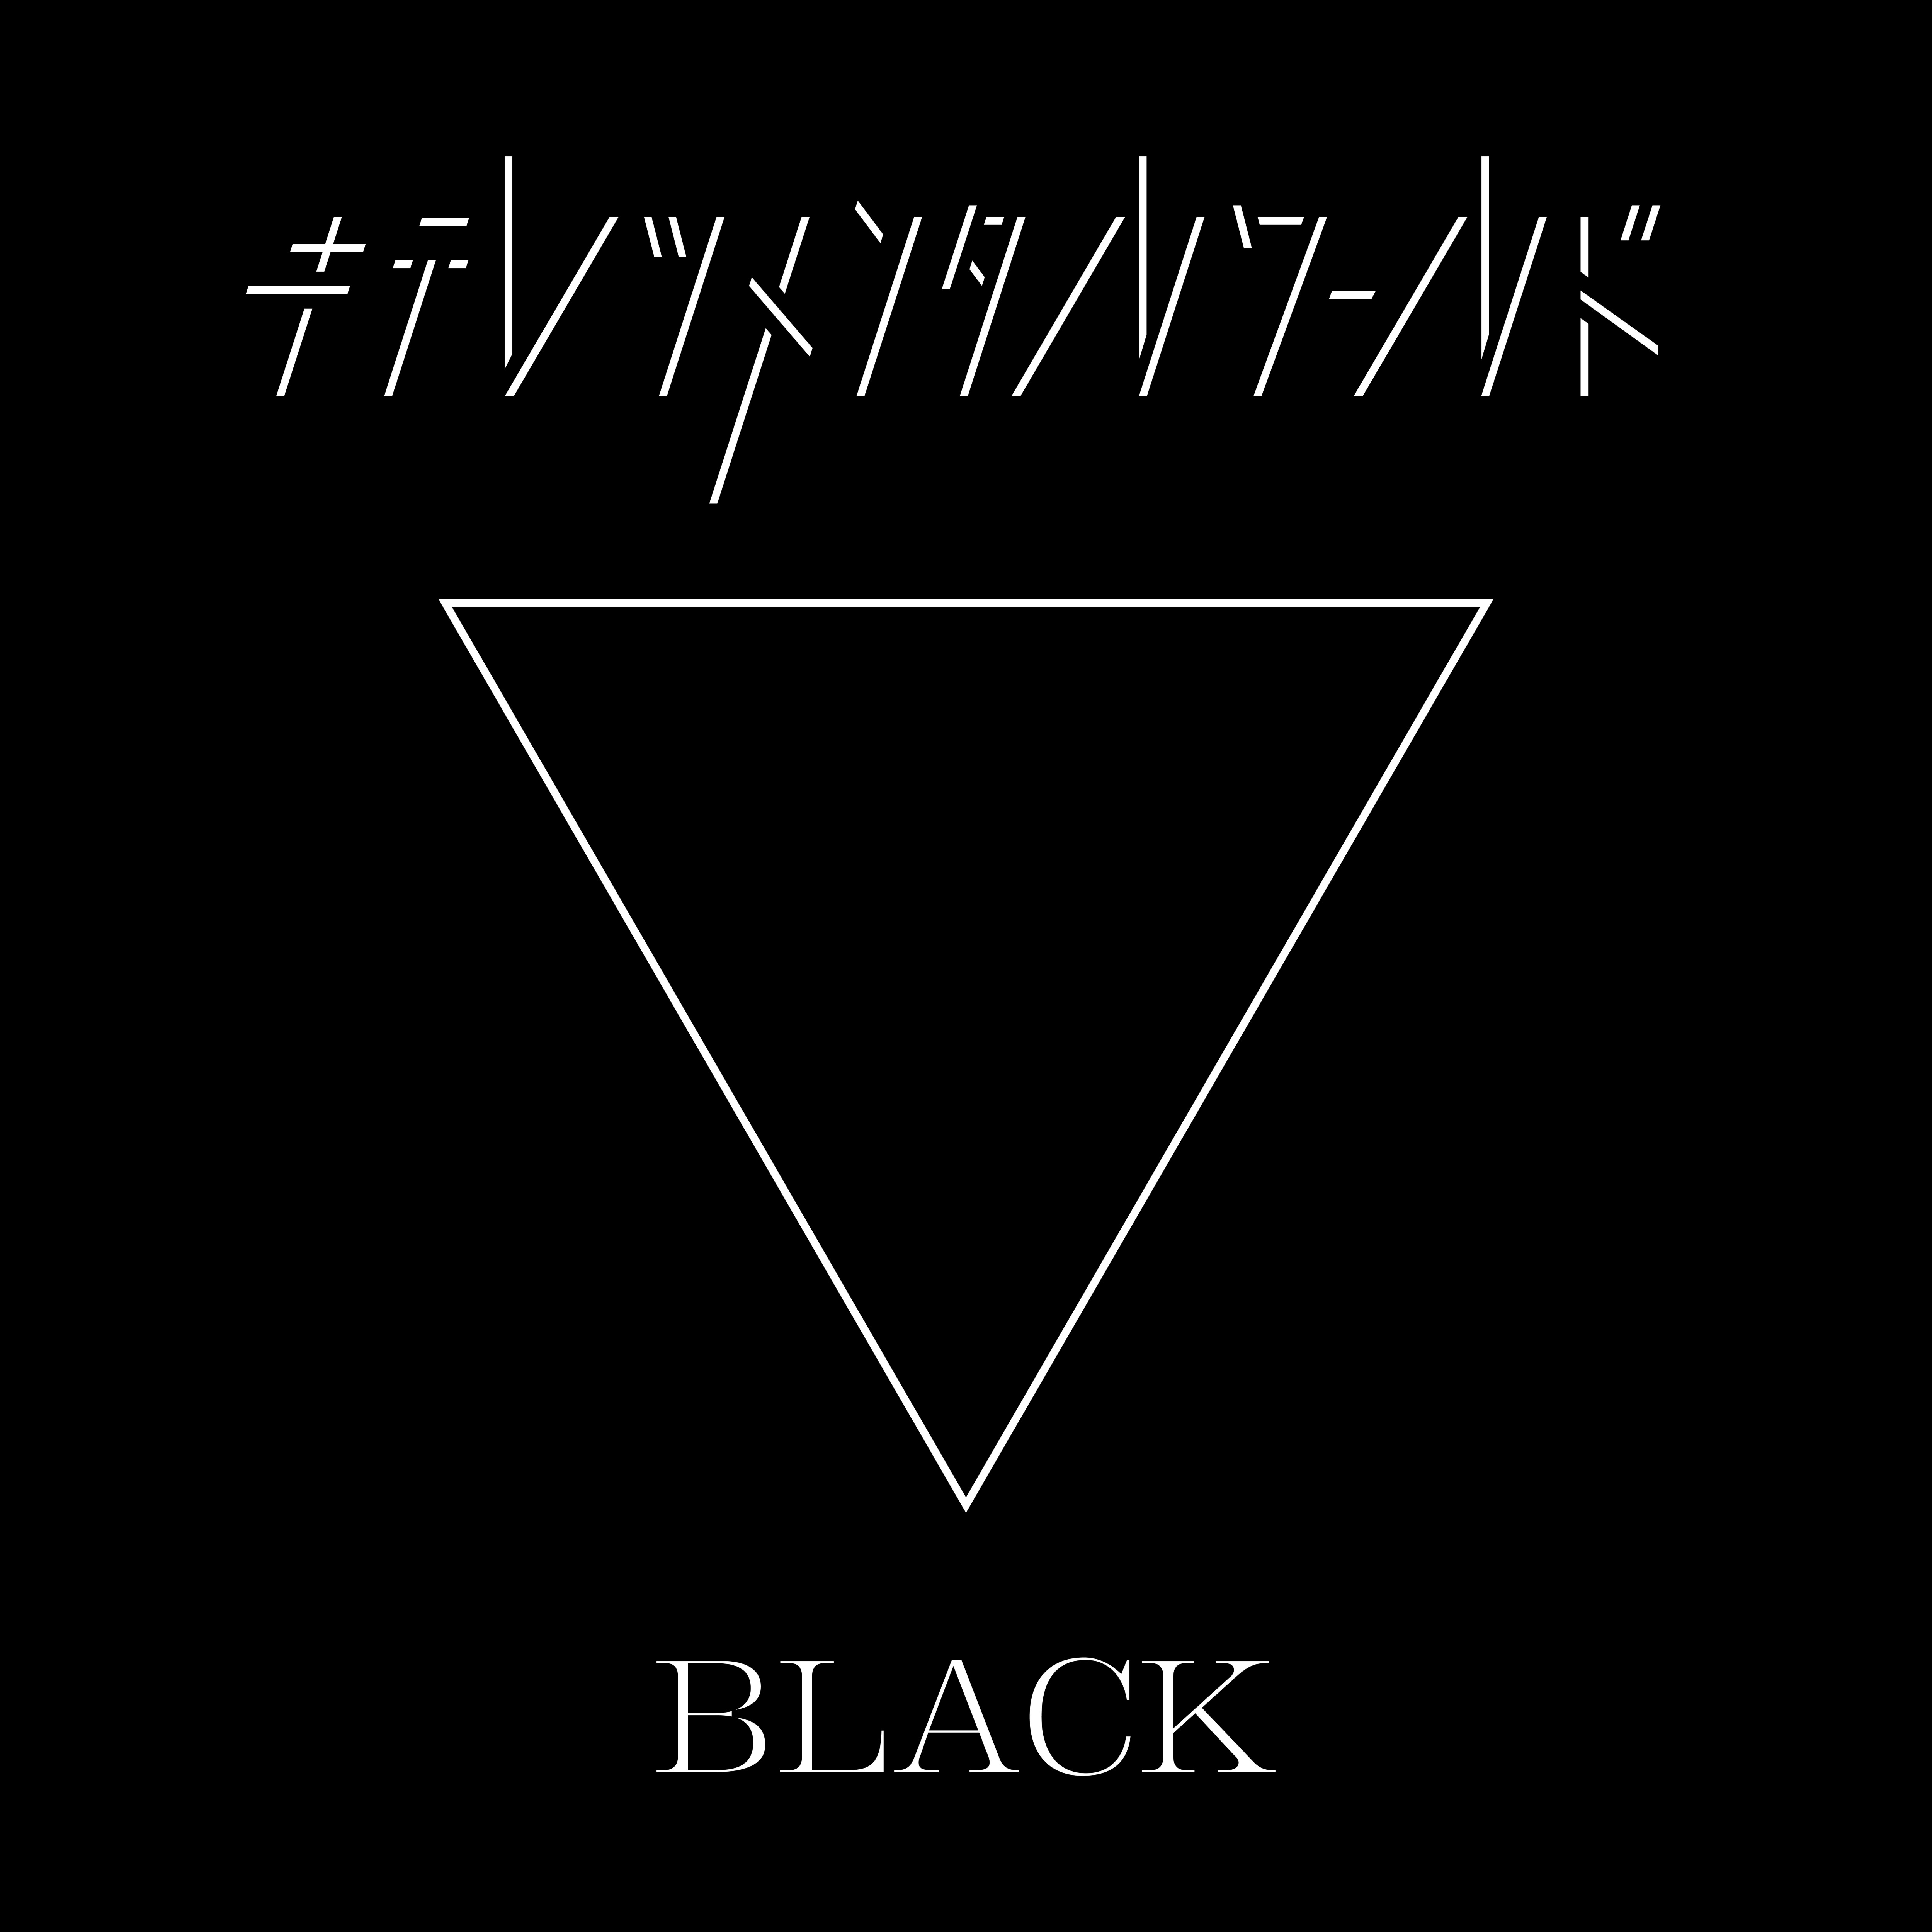 東京ゲゲゲイ (TOKYO GEGEGAY) – キテレツメンタルワールド BLACK [FLAC / 24bit Lossless / WEB] [2020.02.05]